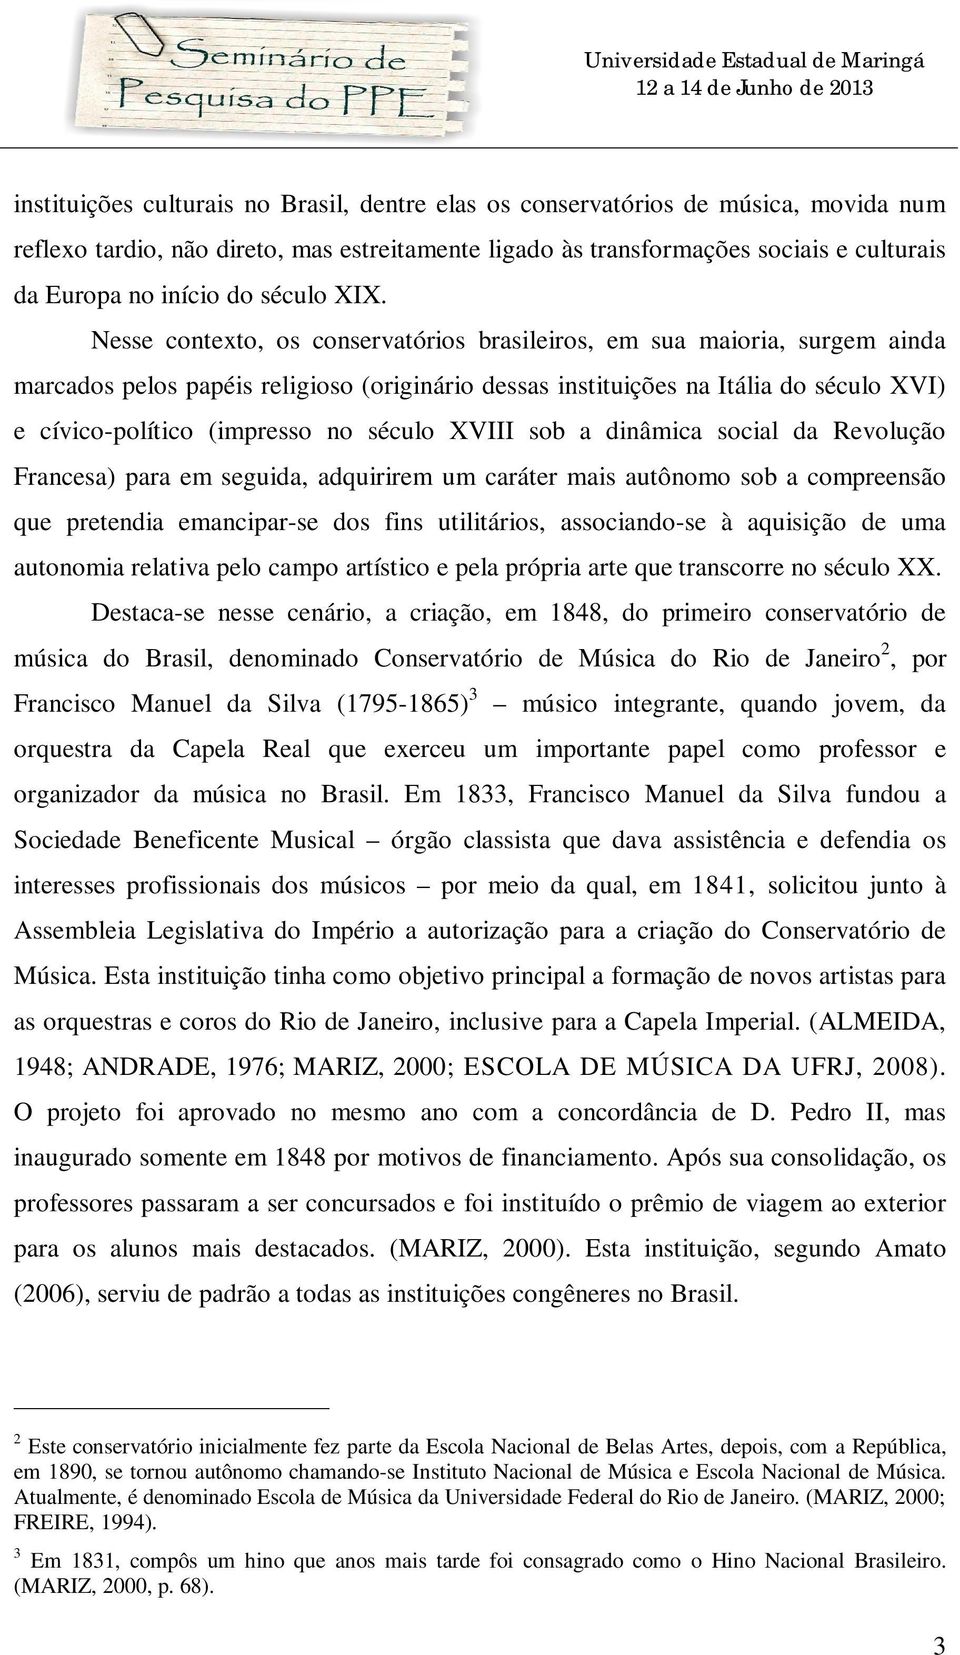 Nesse contexto, os conservatórios brasileiros, em sua maioria, surgem ainda marcados pelos papéis religioso (originário dessas instituições na Itália do século XVI) e cívico-político (impresso no